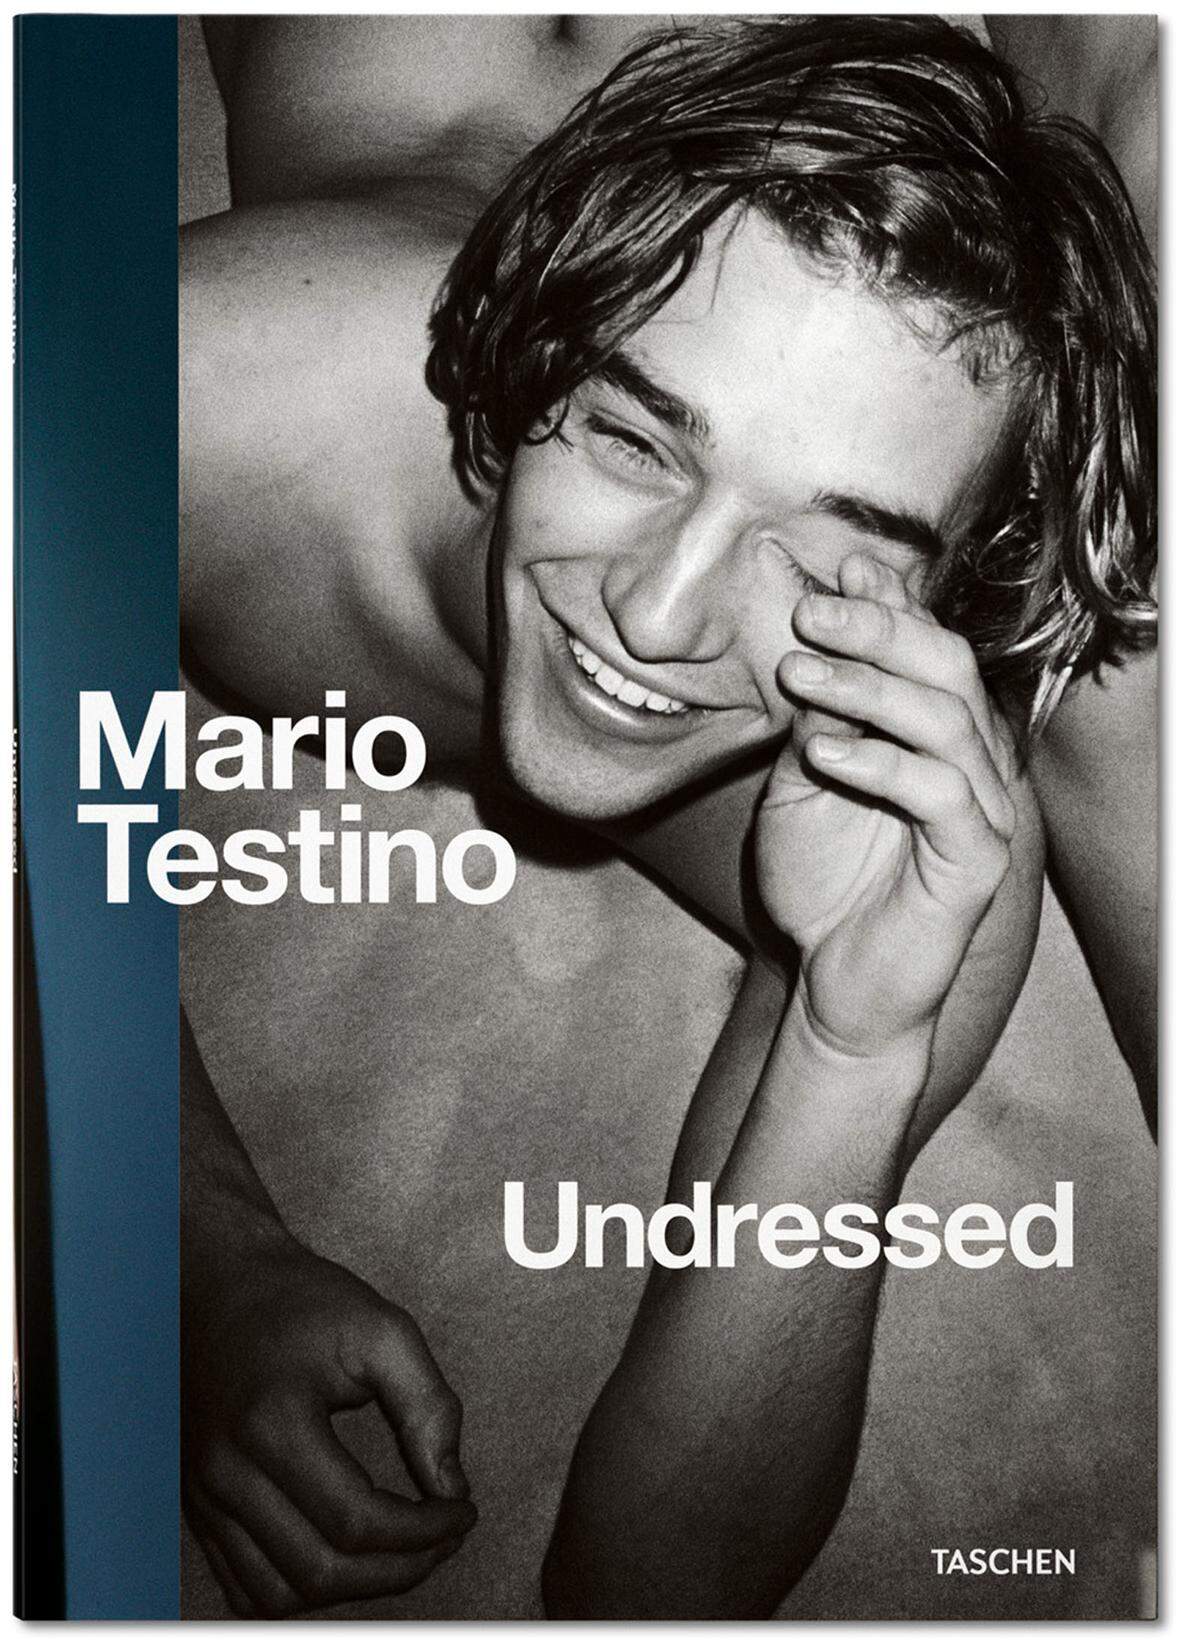 "Mario Testino Undressed", Matthias Harder, Manfred Spitzer, Carine Roitfeld, 144 Seiten, Taschen.